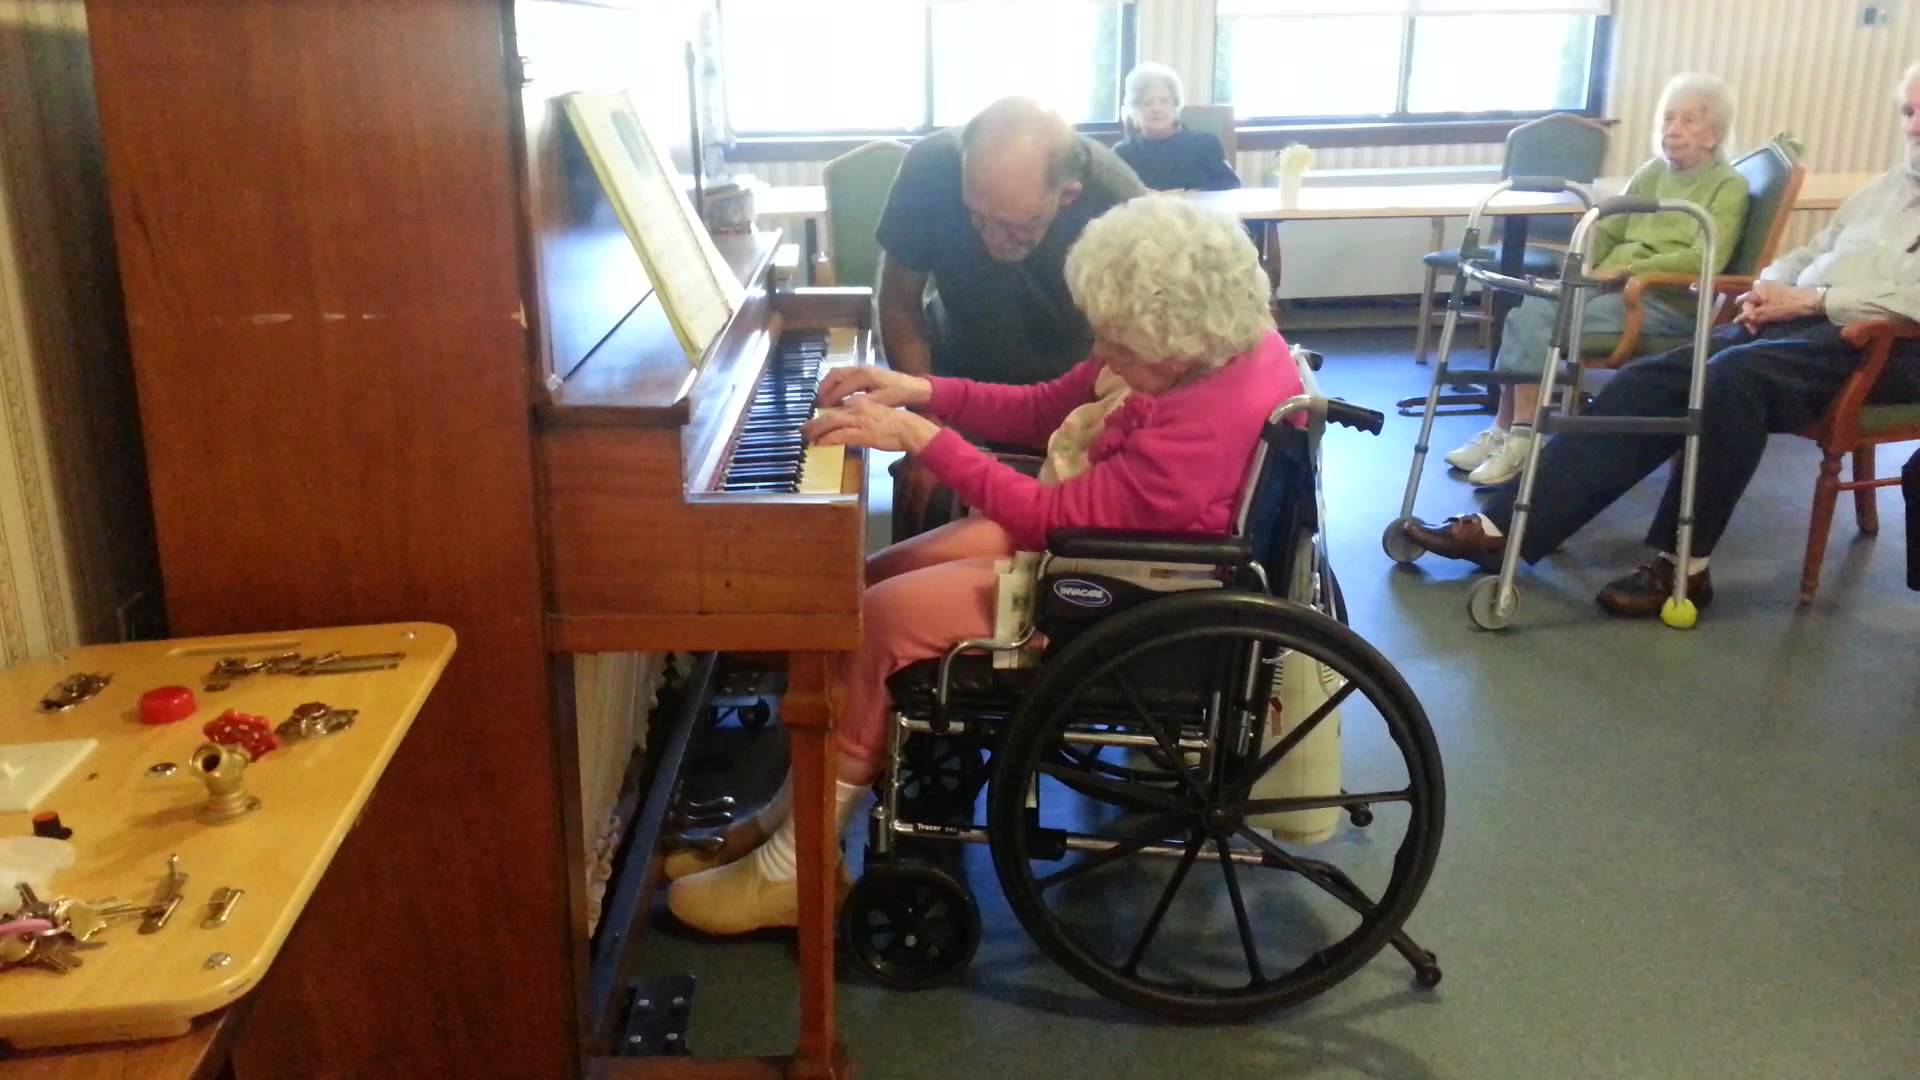 Đọc xong bài viết Típ người trung niên nào có thể học đàn piano, hẳn bạn đã thấy bóng dáng của mình trong đó và muốn “Just do it!” ngay nhưng rồi bạn lại nghi ngại, không dám mạnh dạn làm điều mình muốn.